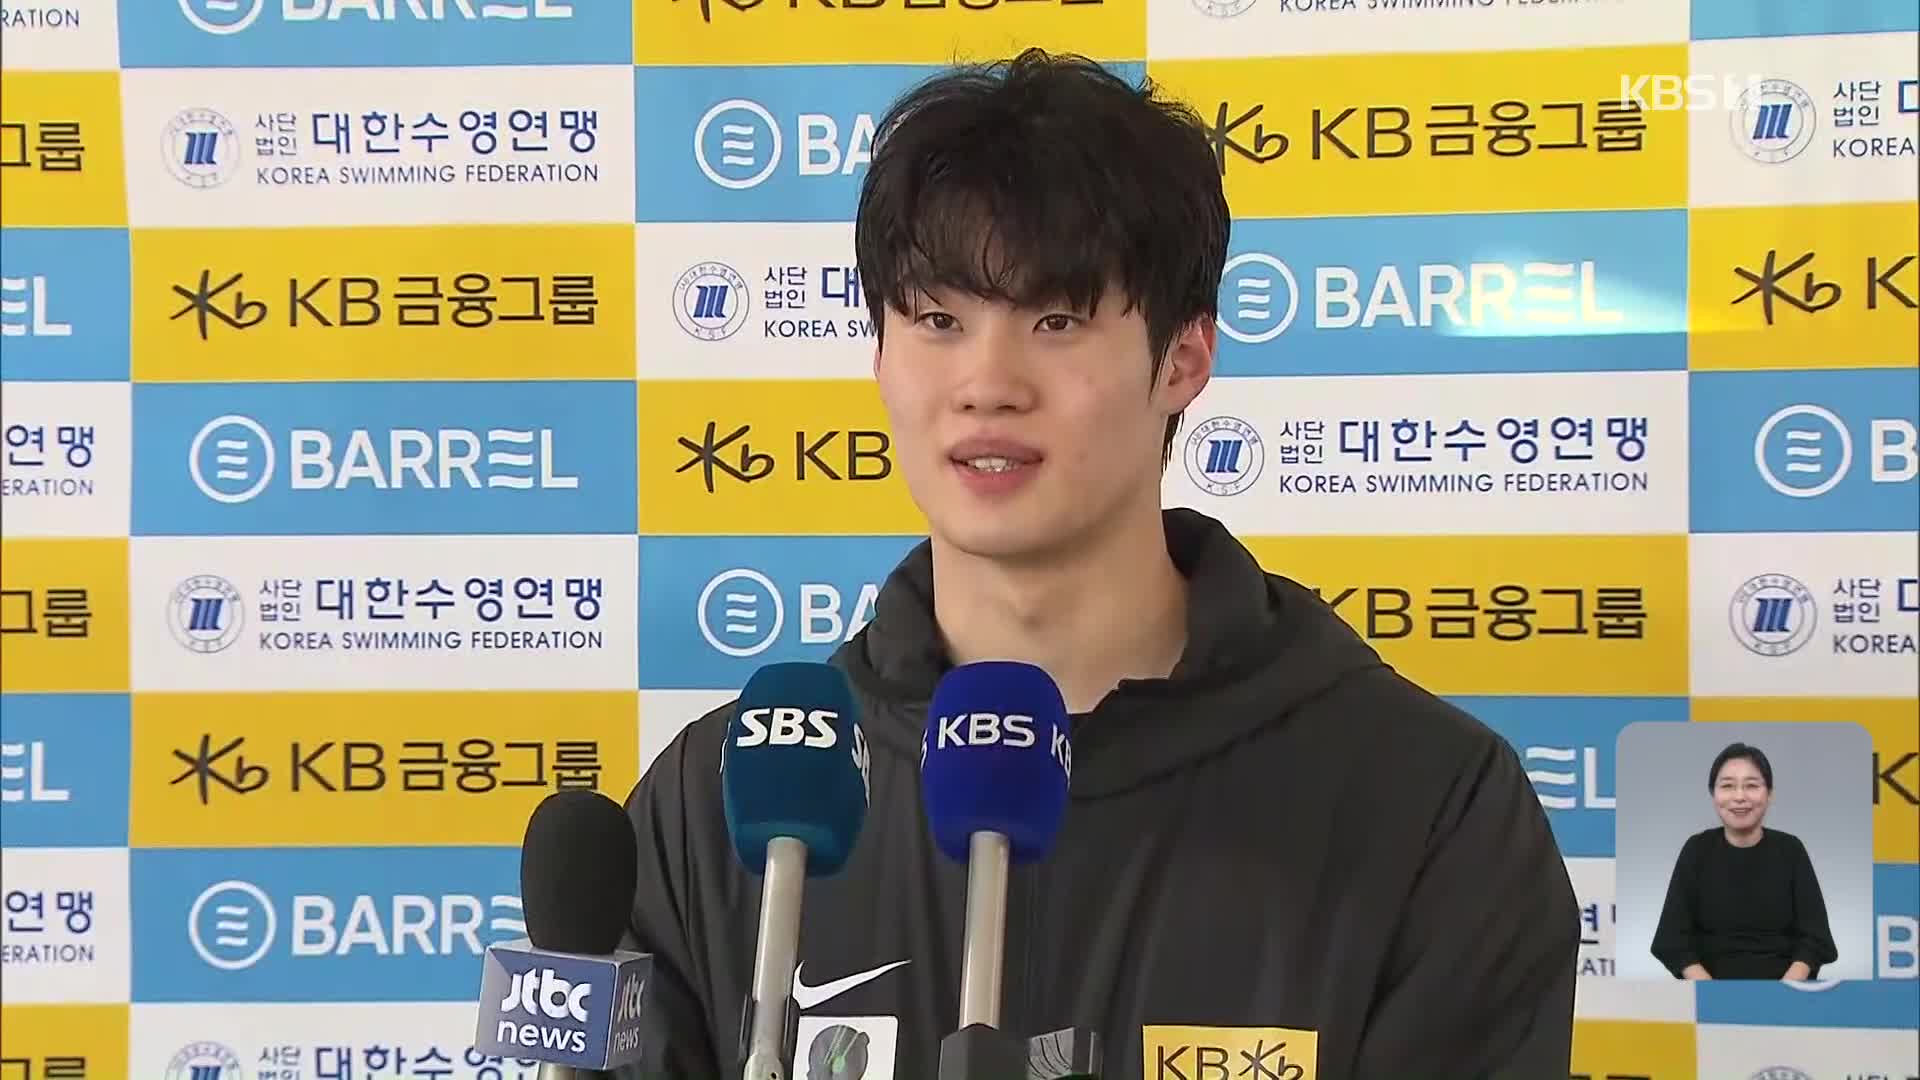 황선우, 주종목 아닌 접영 100m에서 한국 신기록